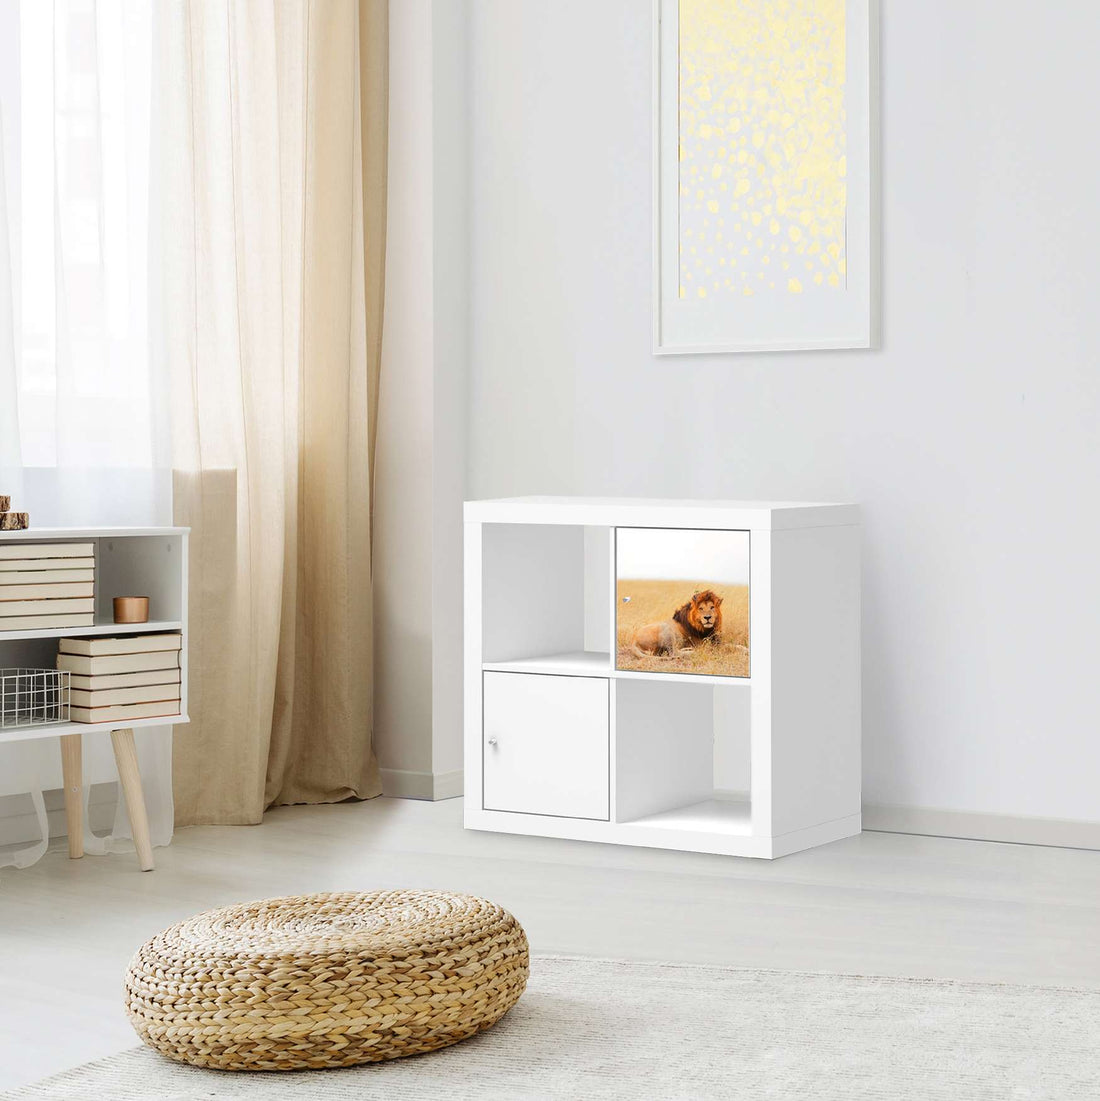 Selbstklebende Folie Lion King - IKEA Kallax Regal 1 Türe - Wohnzimmer